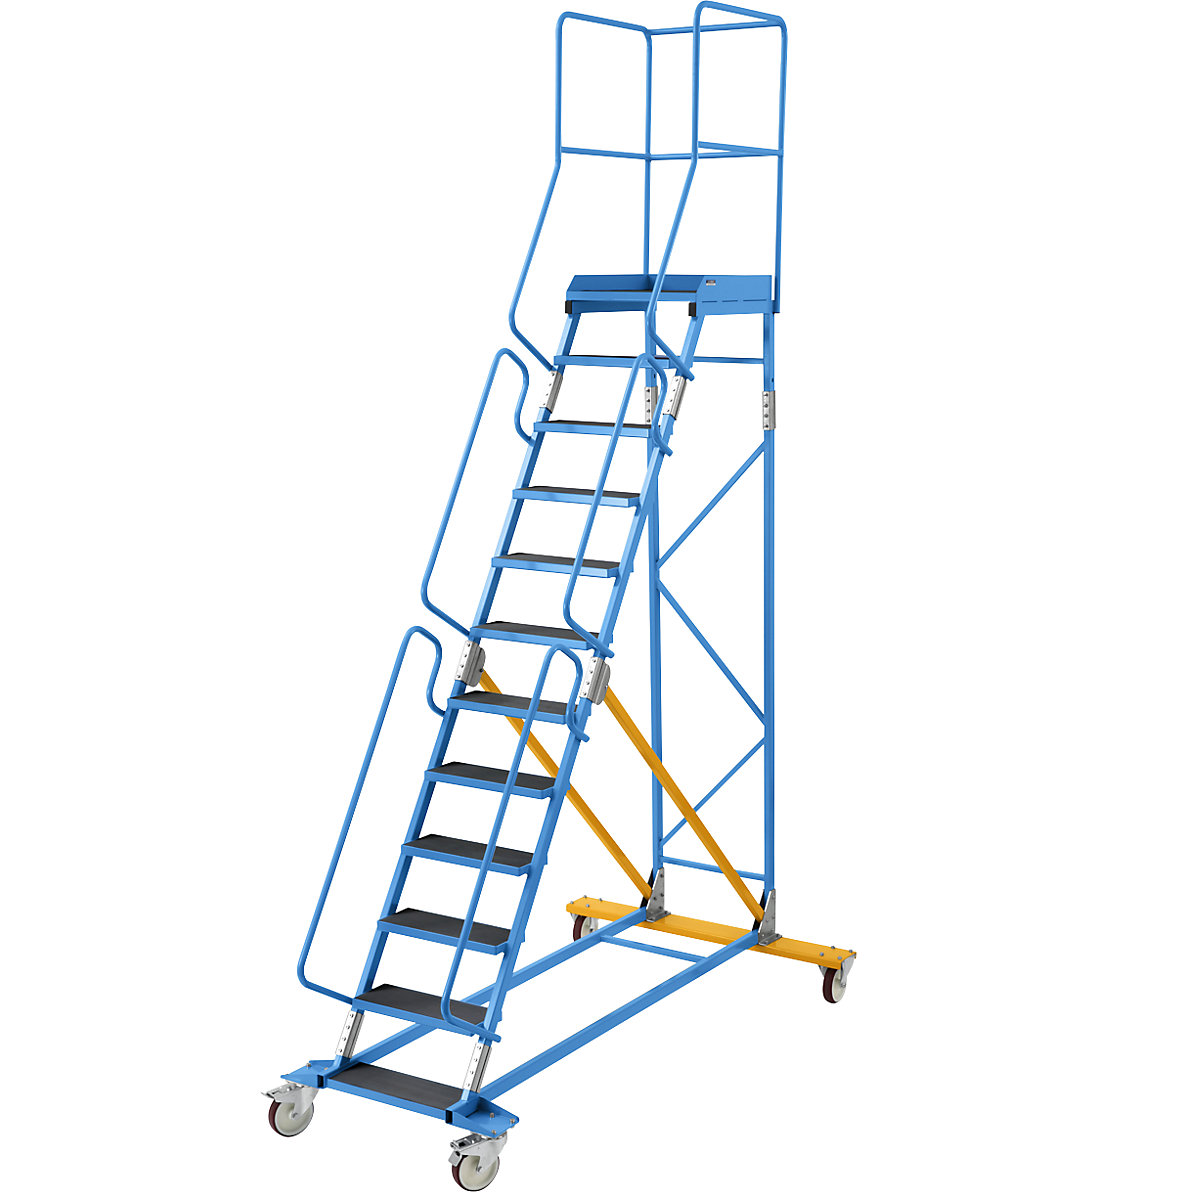 Escada de plataforma móvel – eurokraft pro, encaixe de degrau em borracha estriada, 12 degraus-19